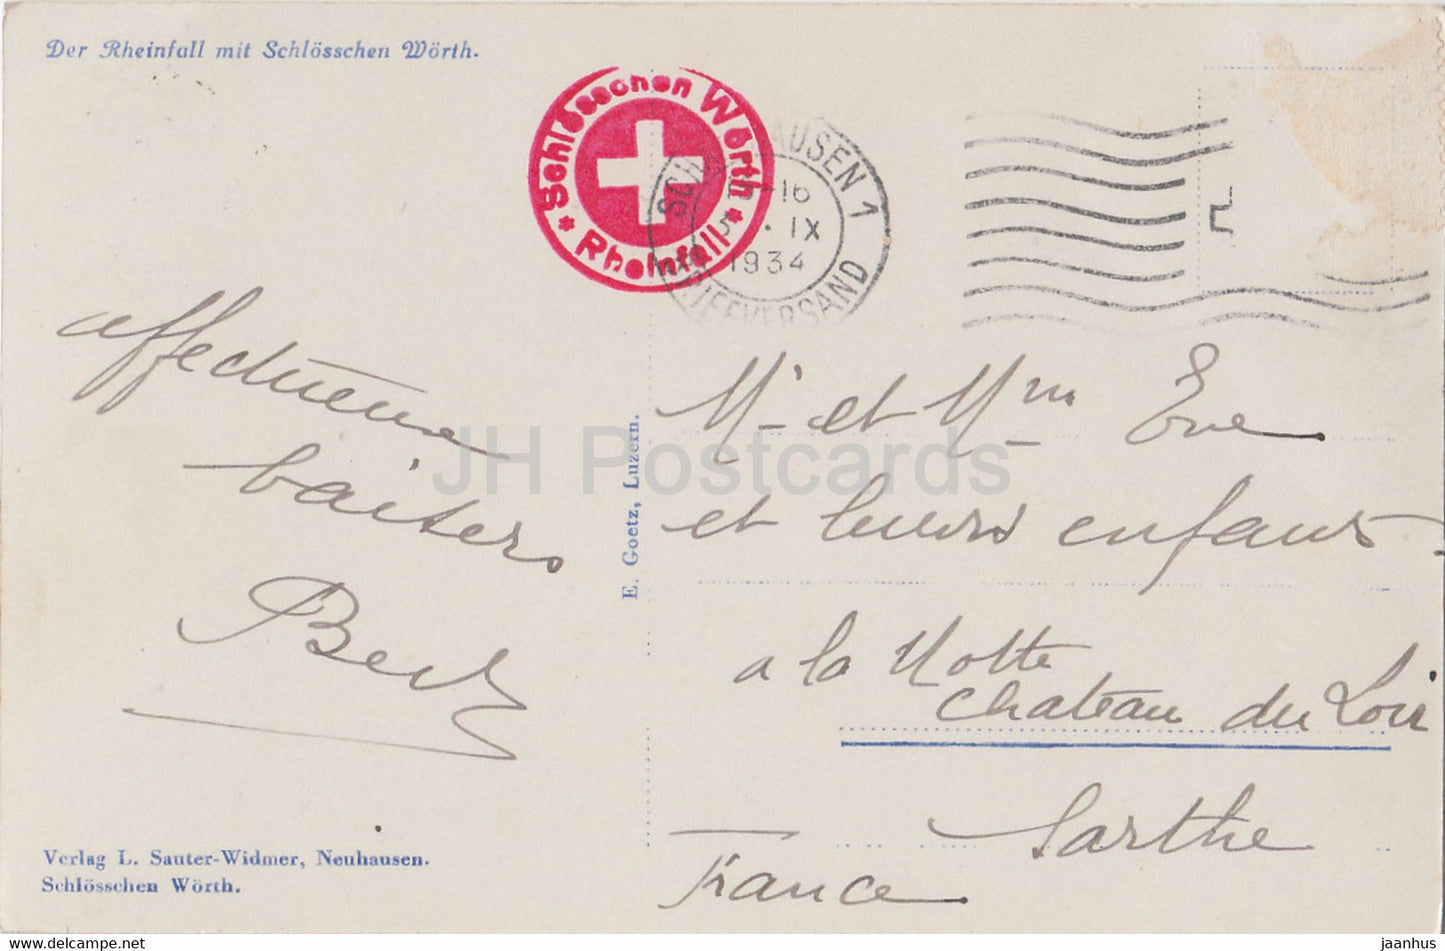 Der Rheinfall mit Schlosschen Worth - bateau - carte postale ancienne - 1934 - Suisse - utilisé